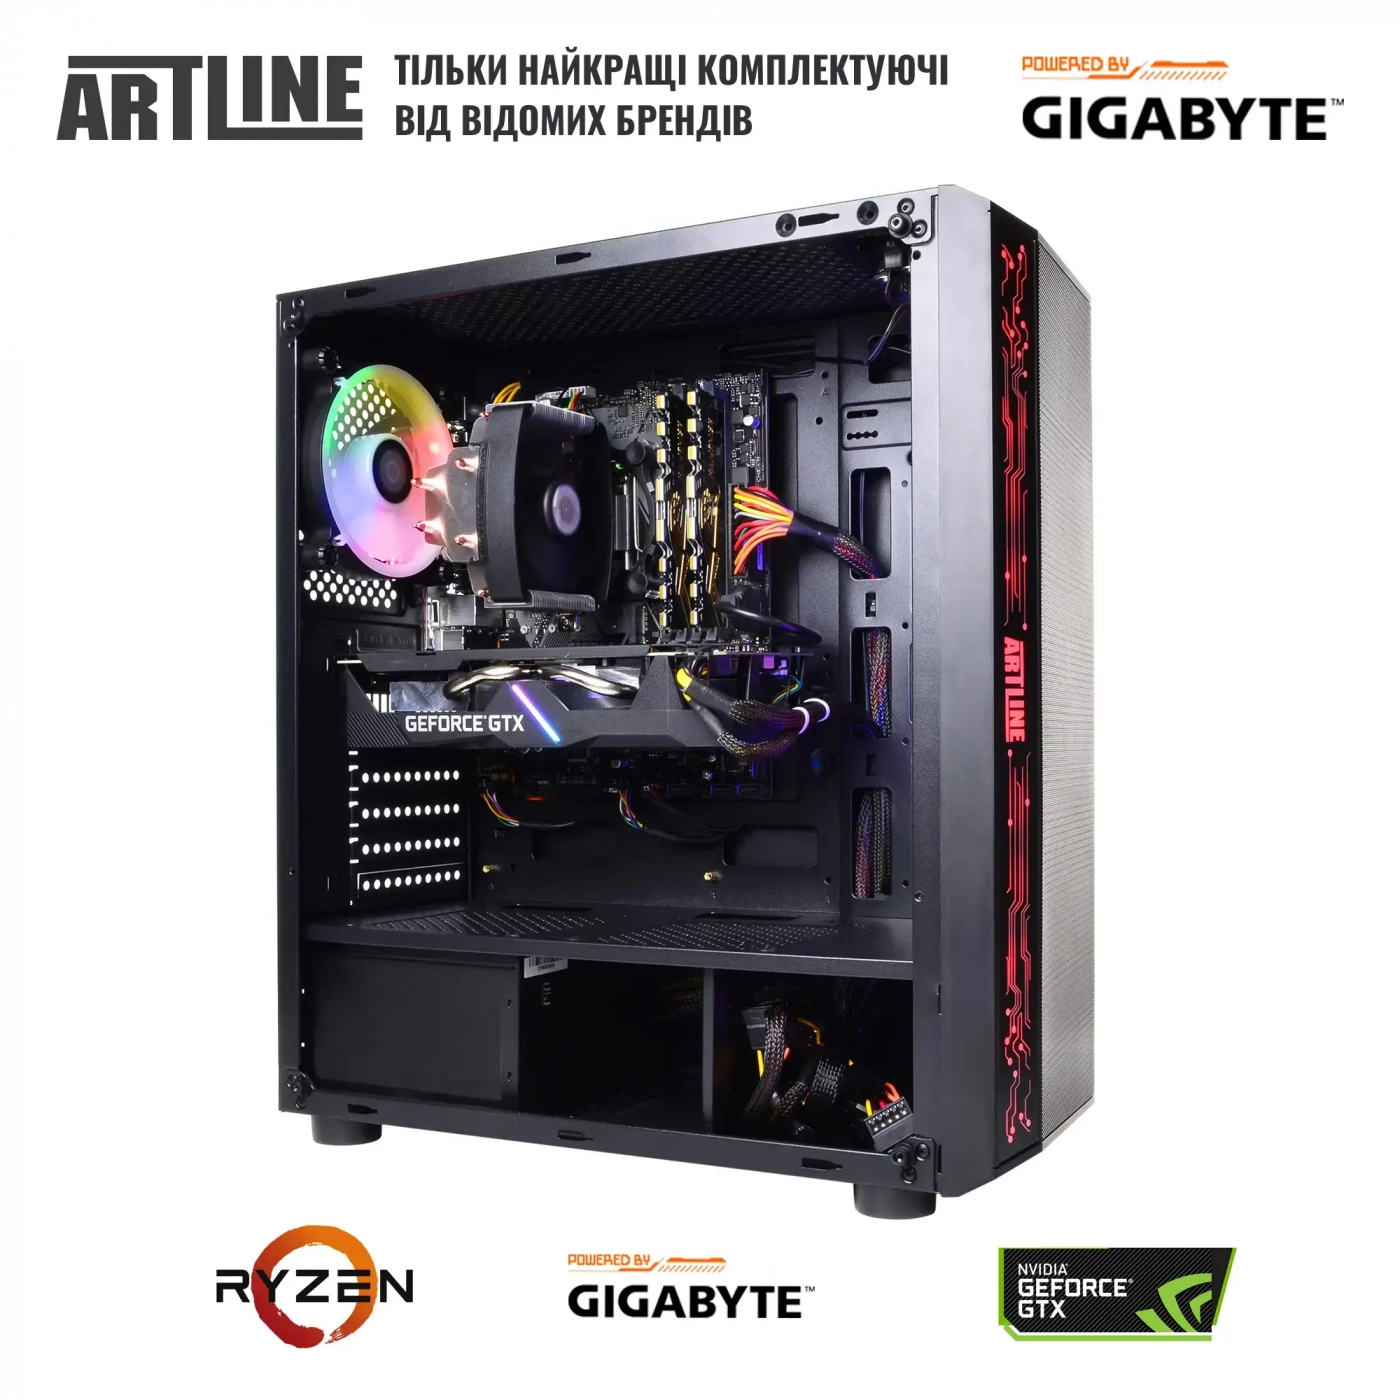 Купить Компьютер ARTLINE Gaming X49v10 - фото 8